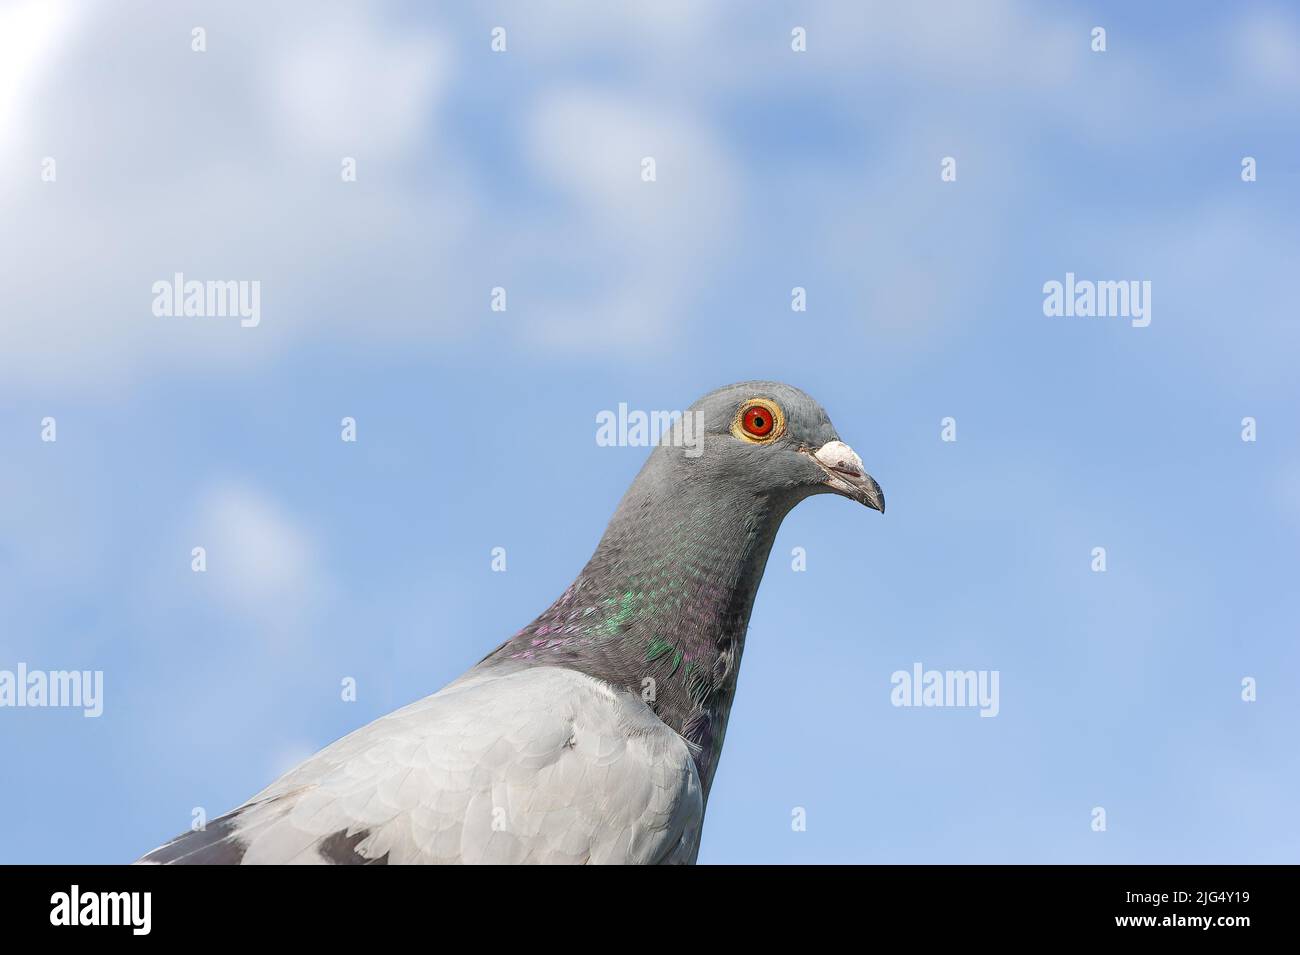 Un retrato de carreras o homing pigeon mirando a la cámara. Foto de stock